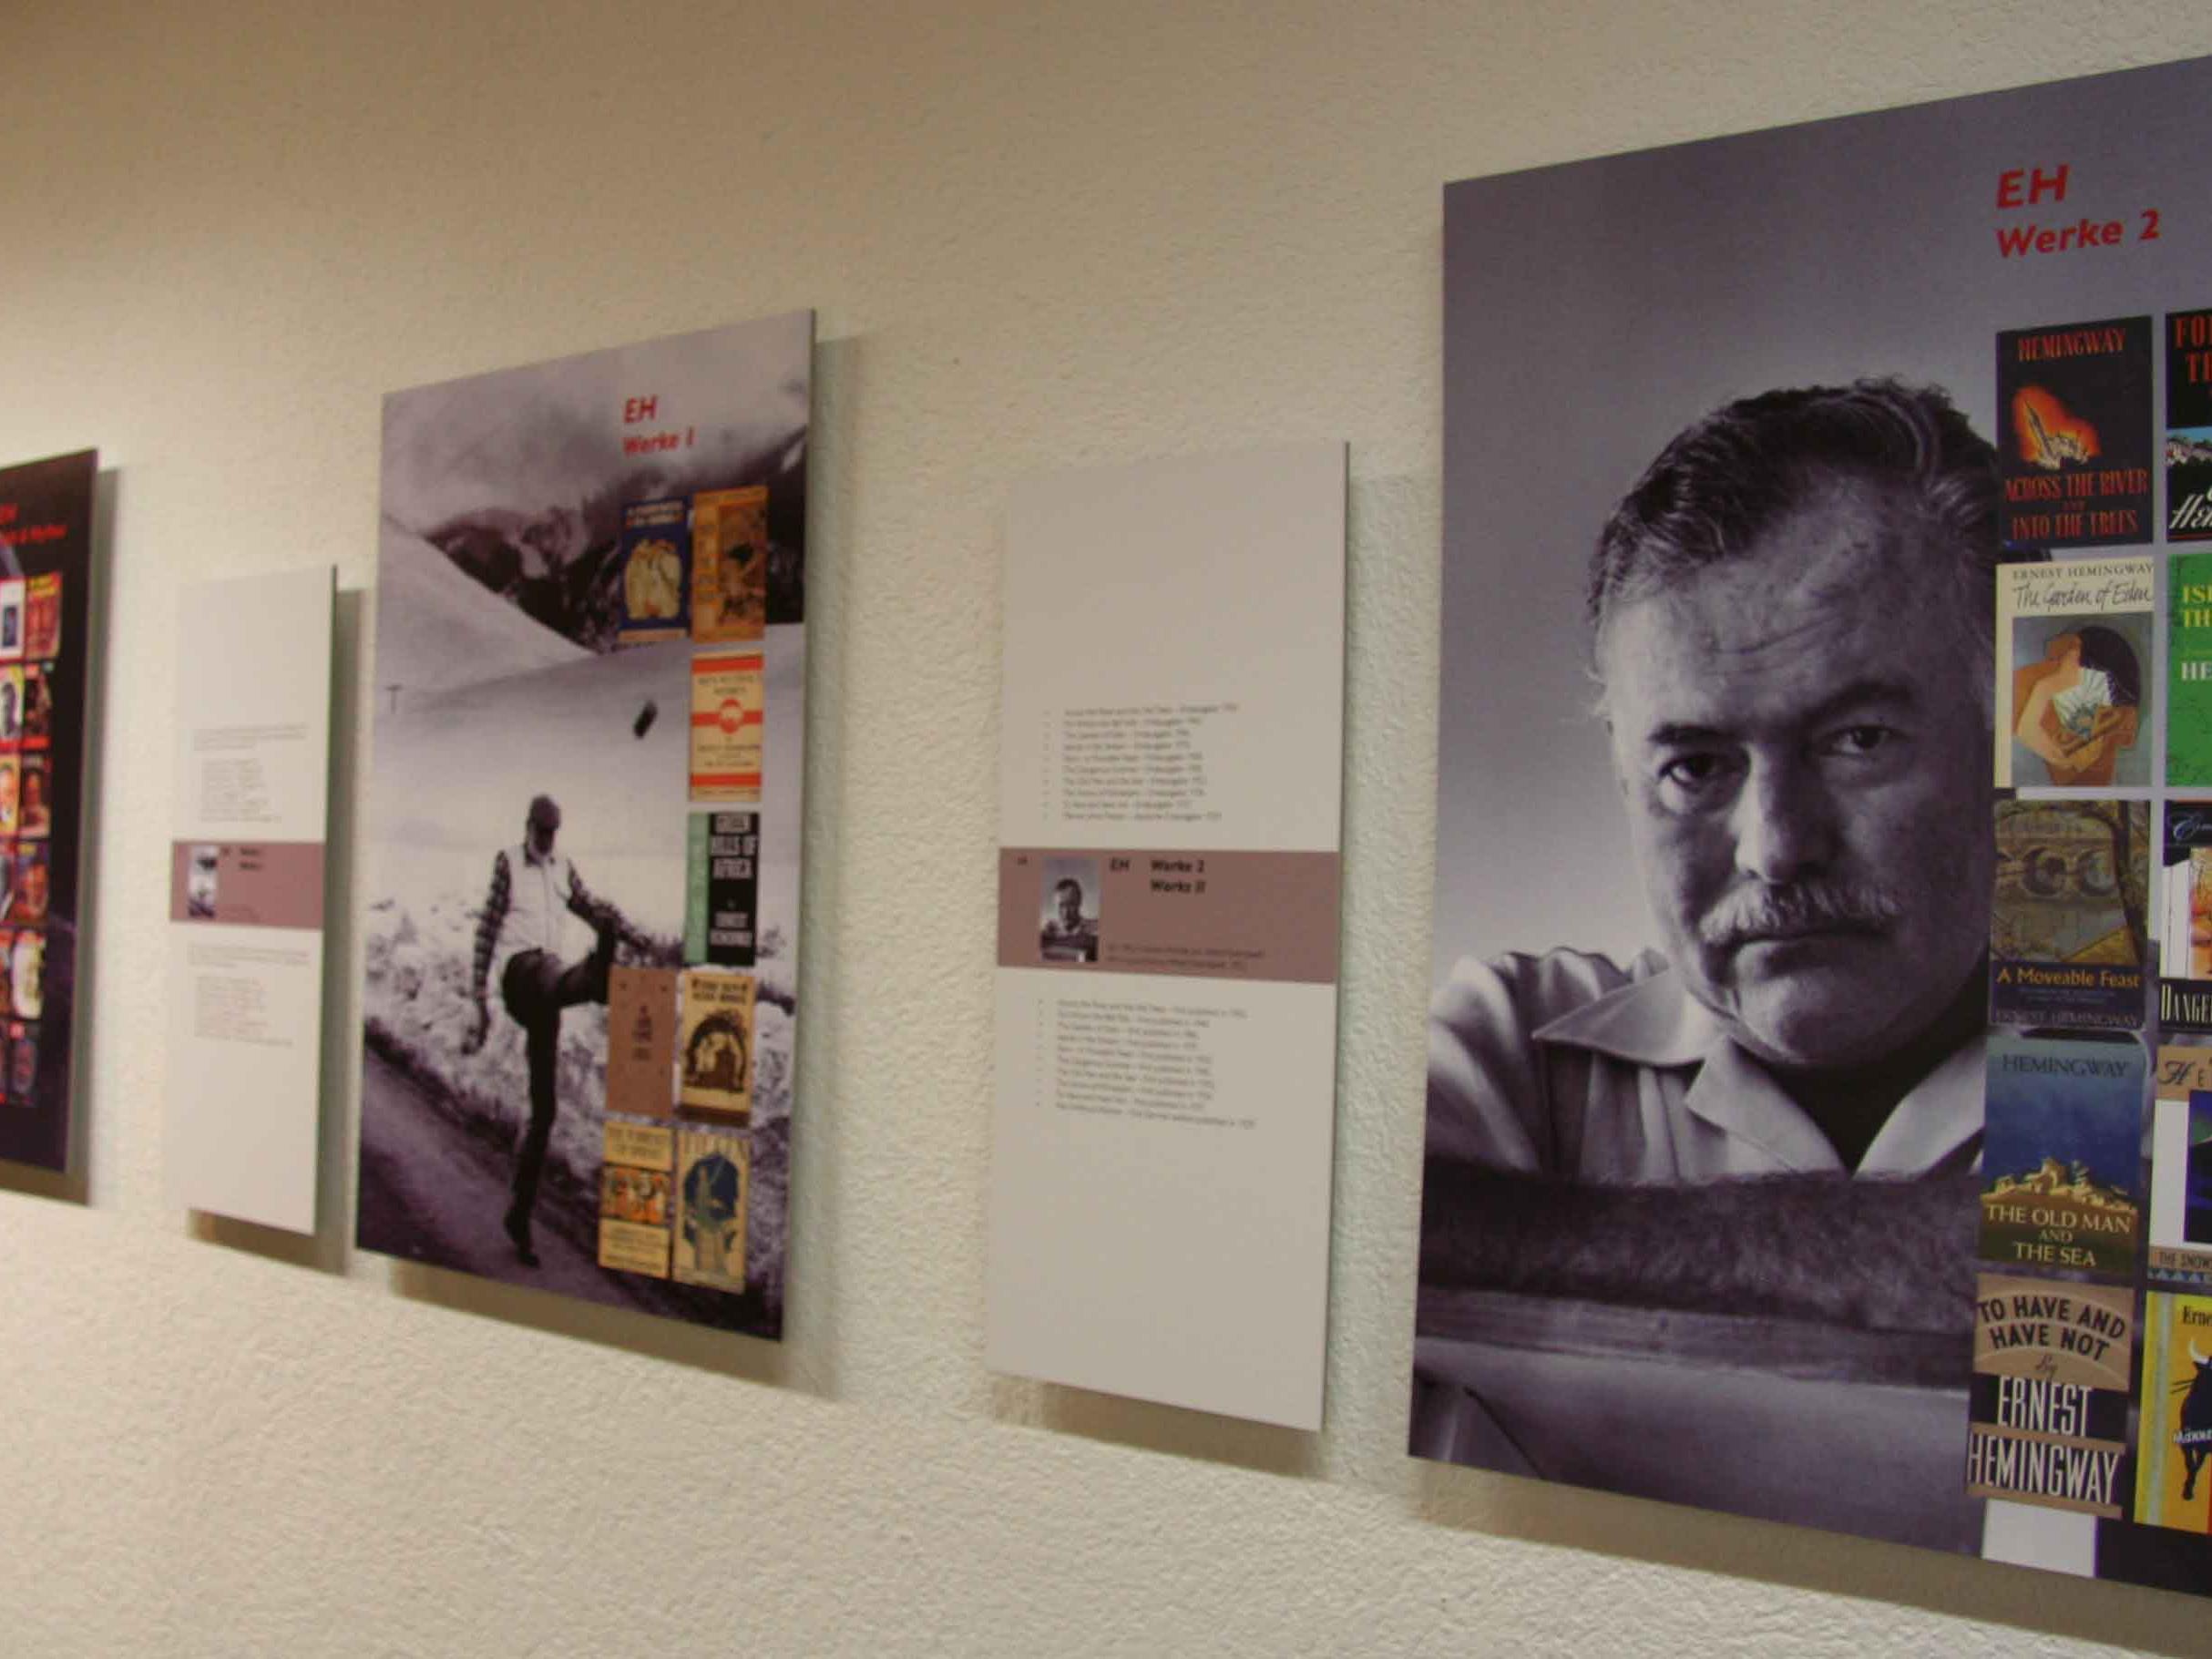 Hemingways Leidenschaft zum Montafon spiegelt sich in zahlreichen Schriftstücken und der Ausstellung wieder.